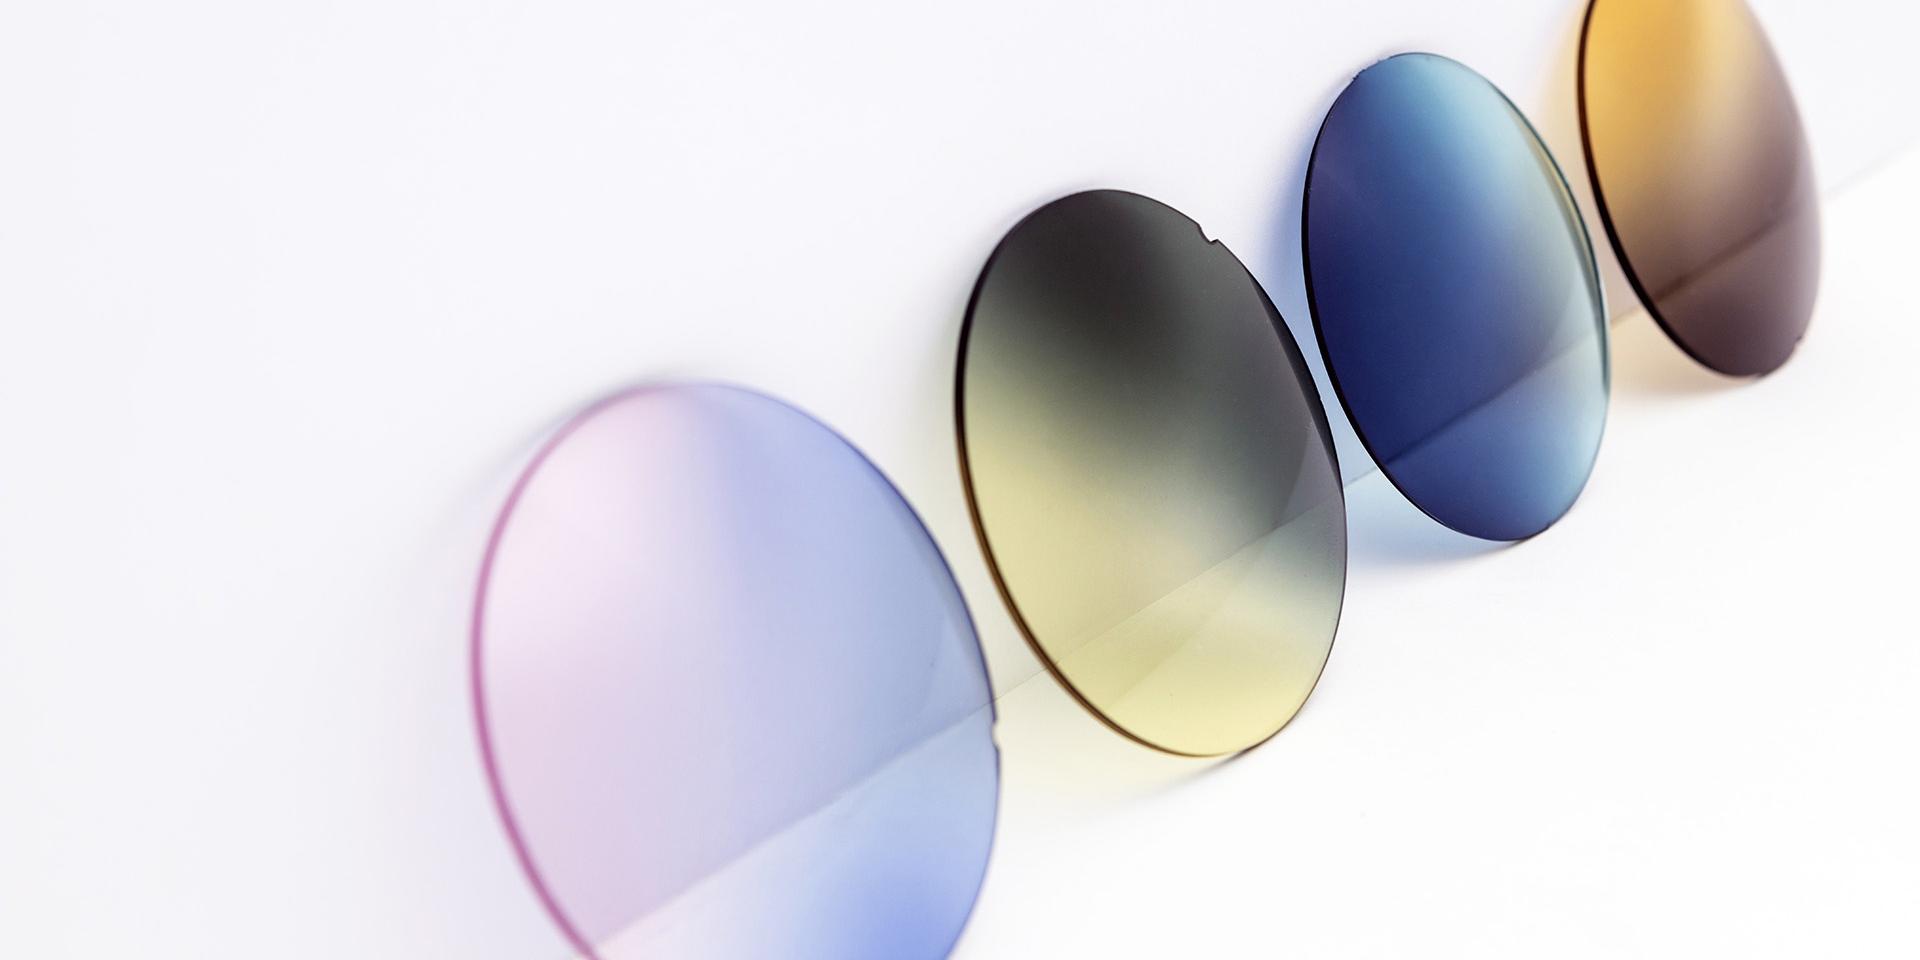 Diferentes lentes coloridas para óculos de sol sobre uma superfície branca: rosa arroxeado, cinza amarelado, azul e marrom.